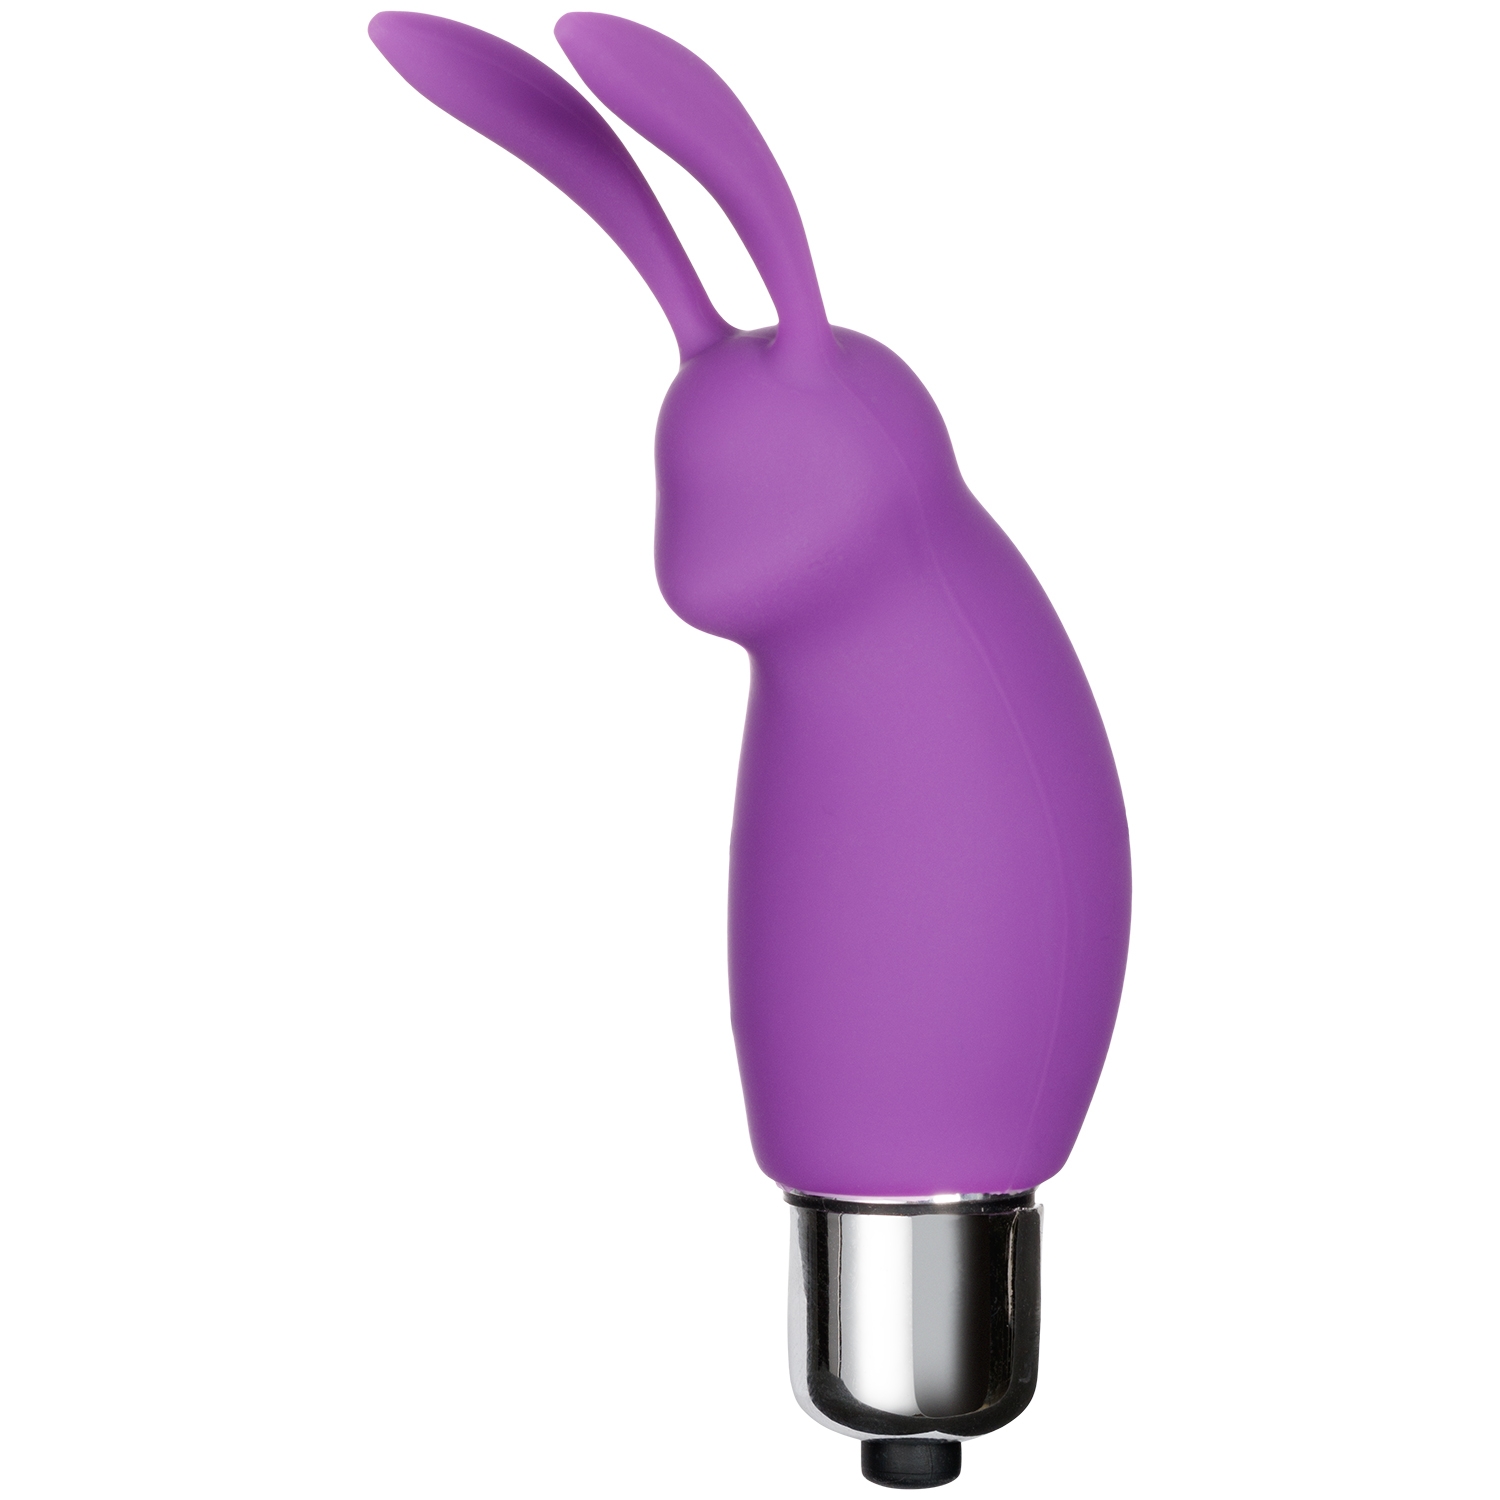 baseks Teasing Rabbit Vibrator - Purple thumbnail